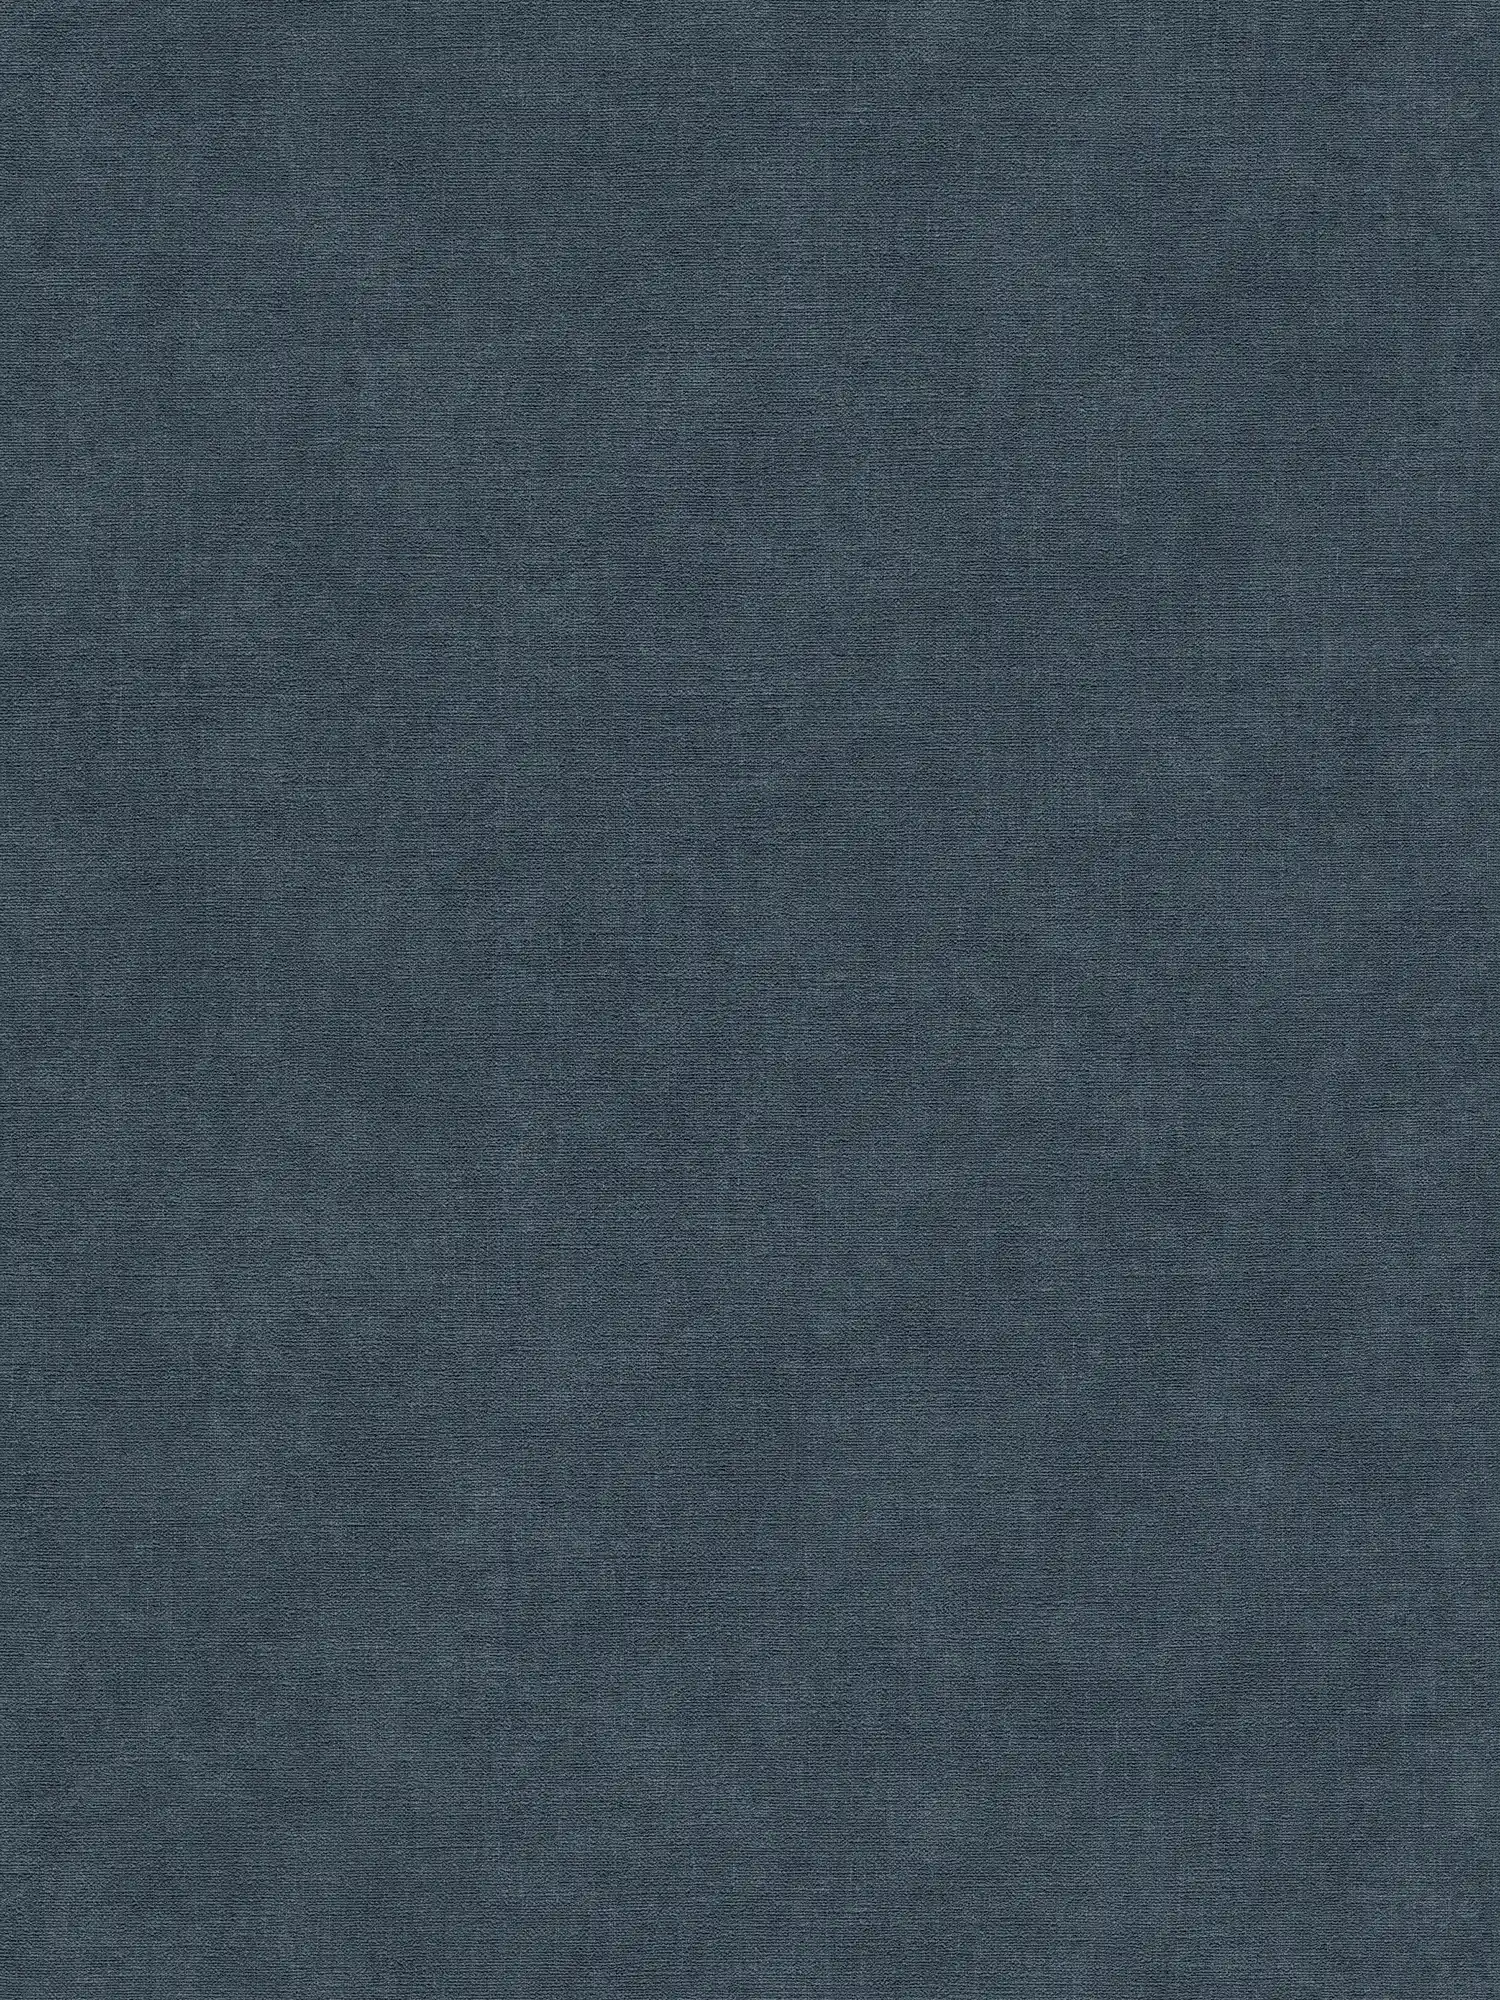 Effen vliesbehang met een licht gestructureerde textiellook - blauw, donkerblauw
